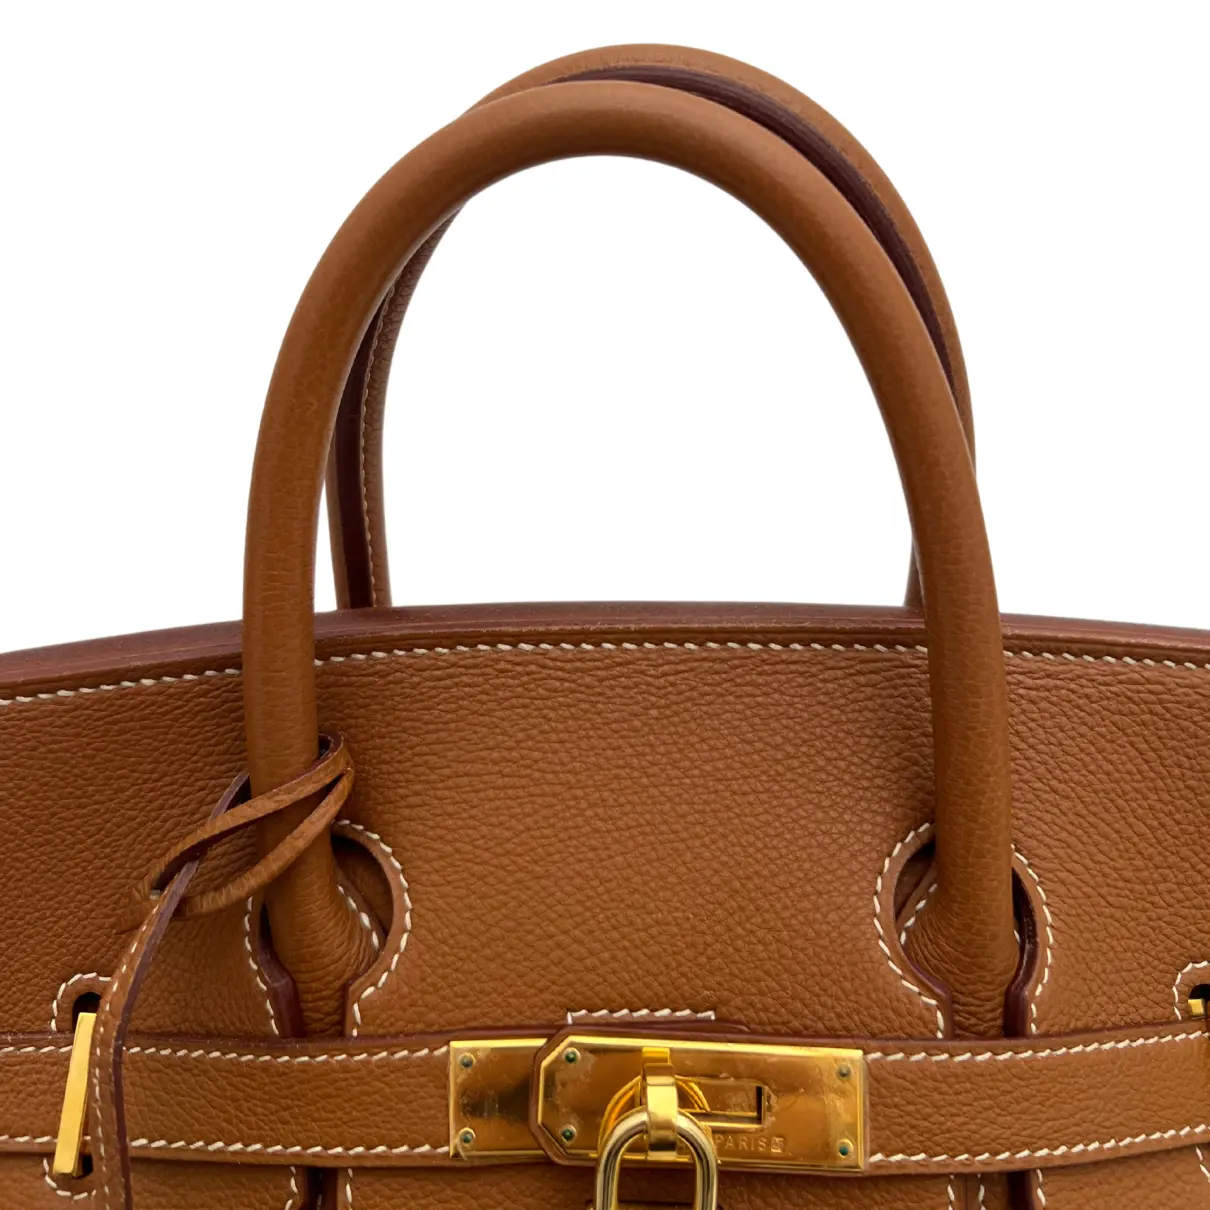 Haut à Courroies leather handbag Hermès - Vintage